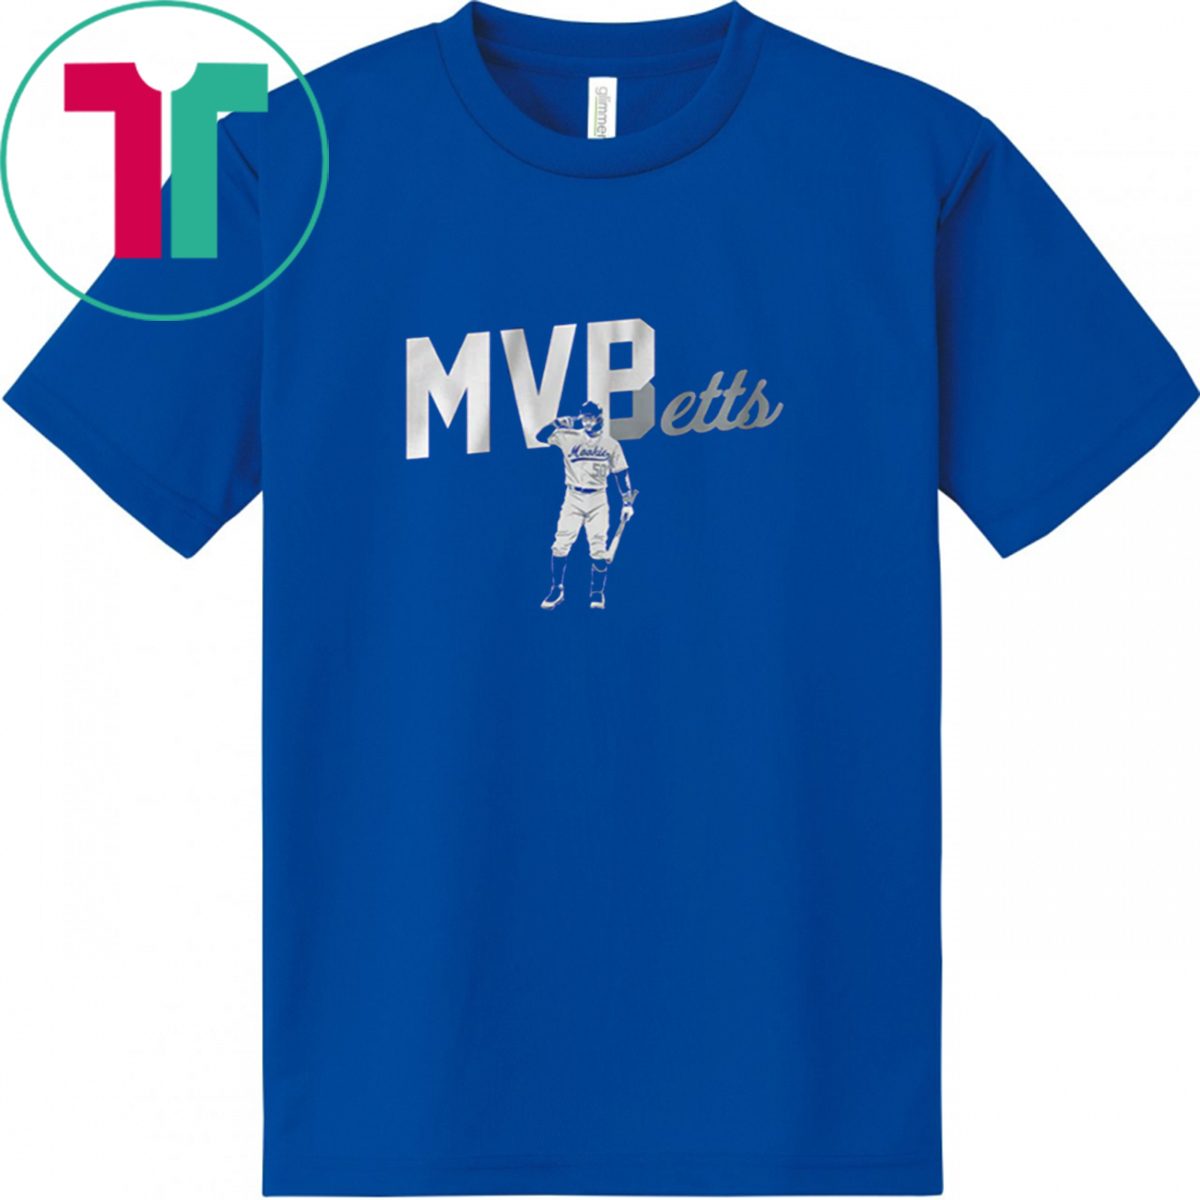 Mookie Betts: MVBetts T-Shirt